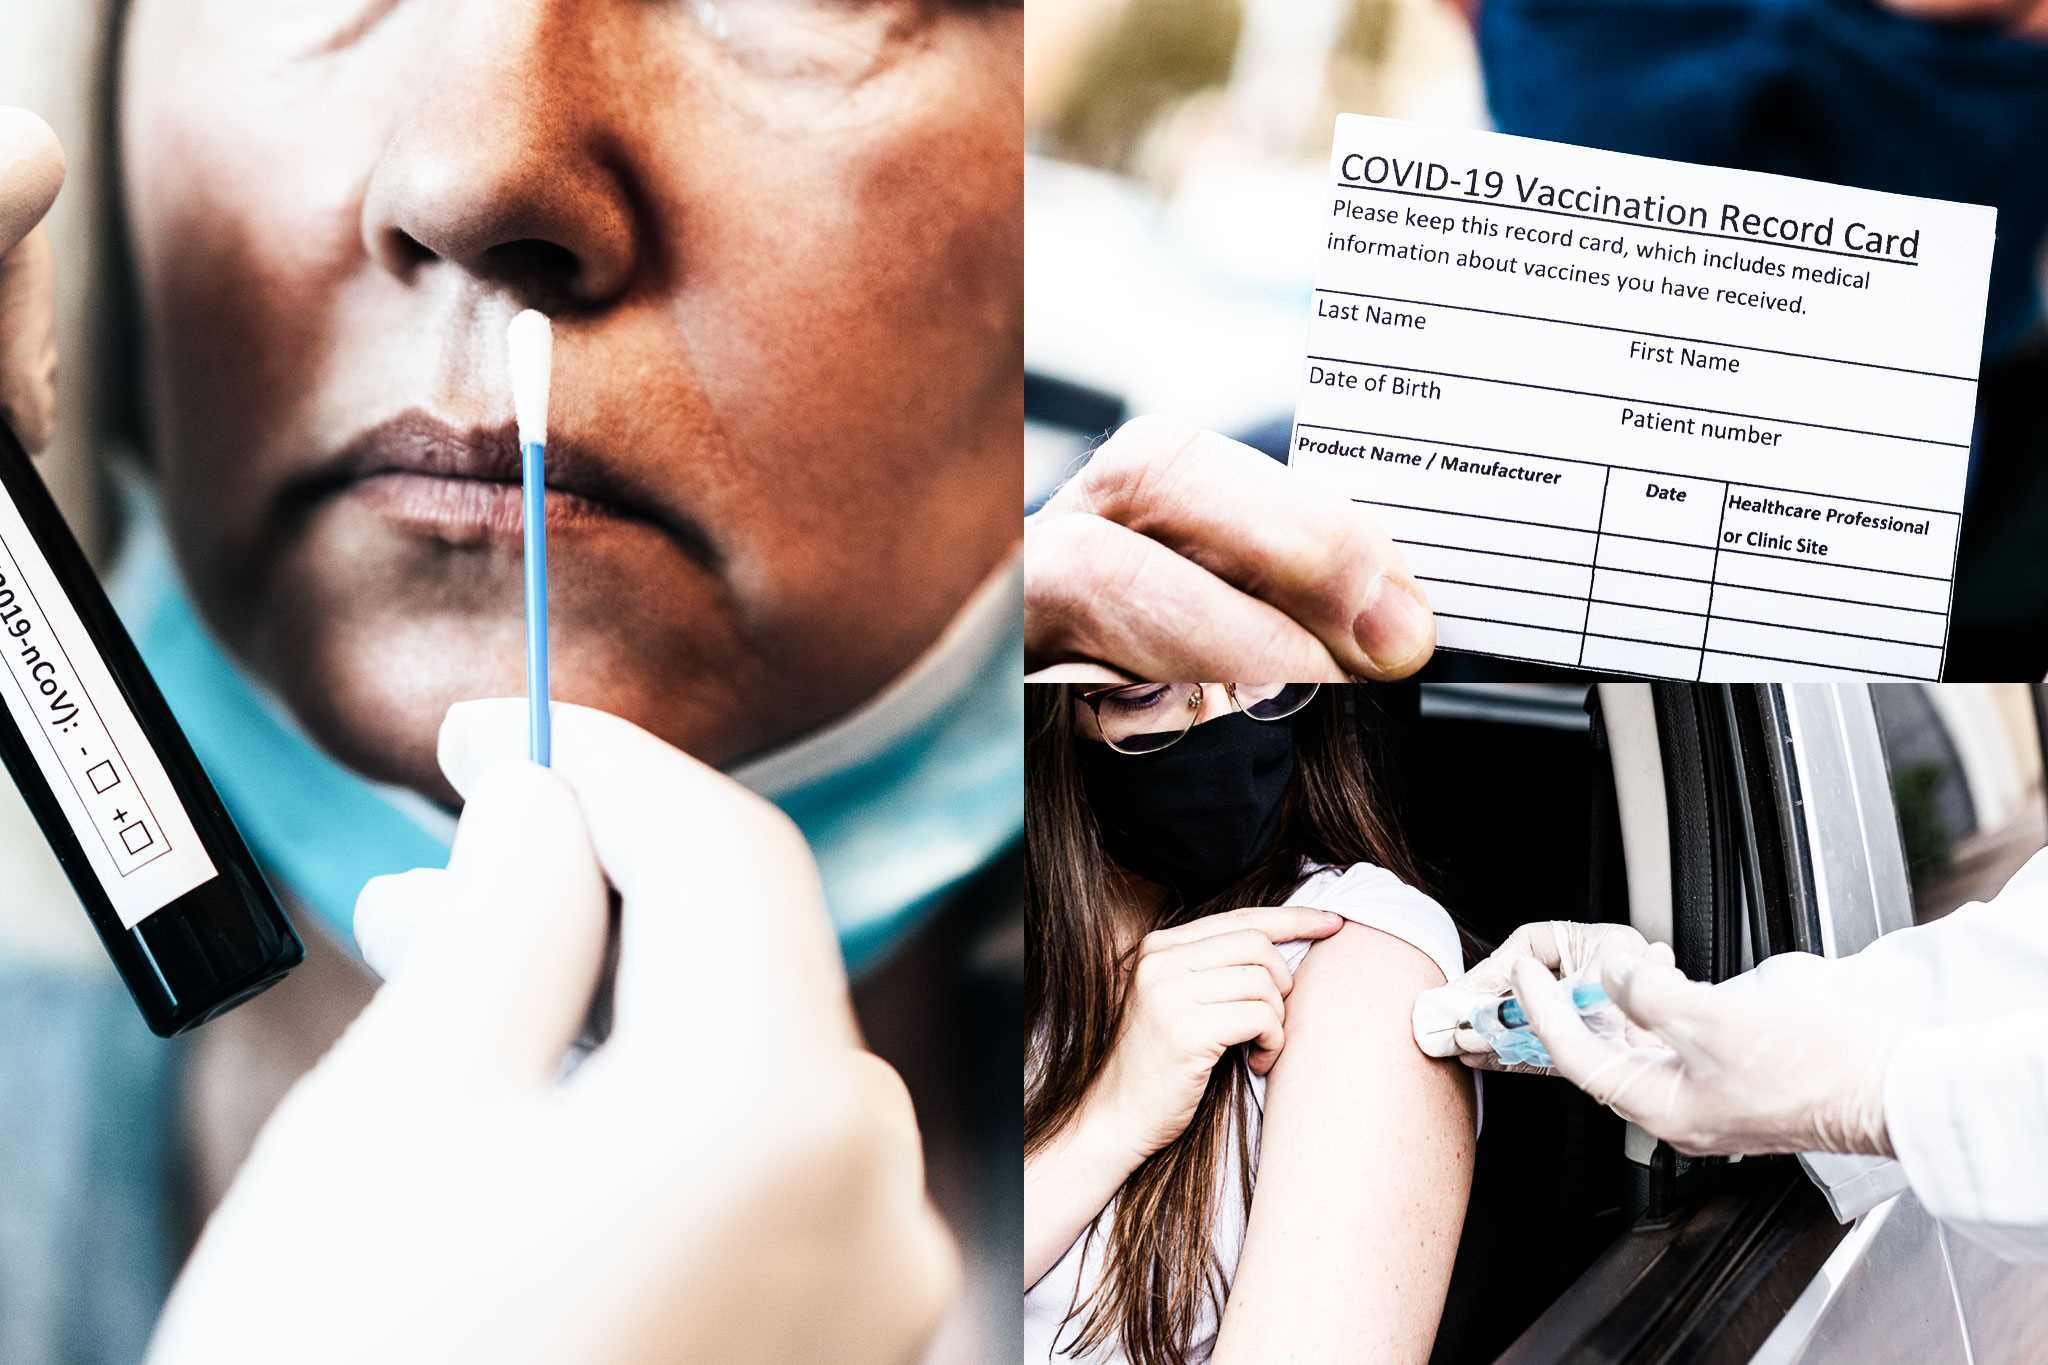 Mujer haciéndose la prueba de hisopo nasal COVID-19 e imagen de la tarjeta de registro de vacunación COVID-19